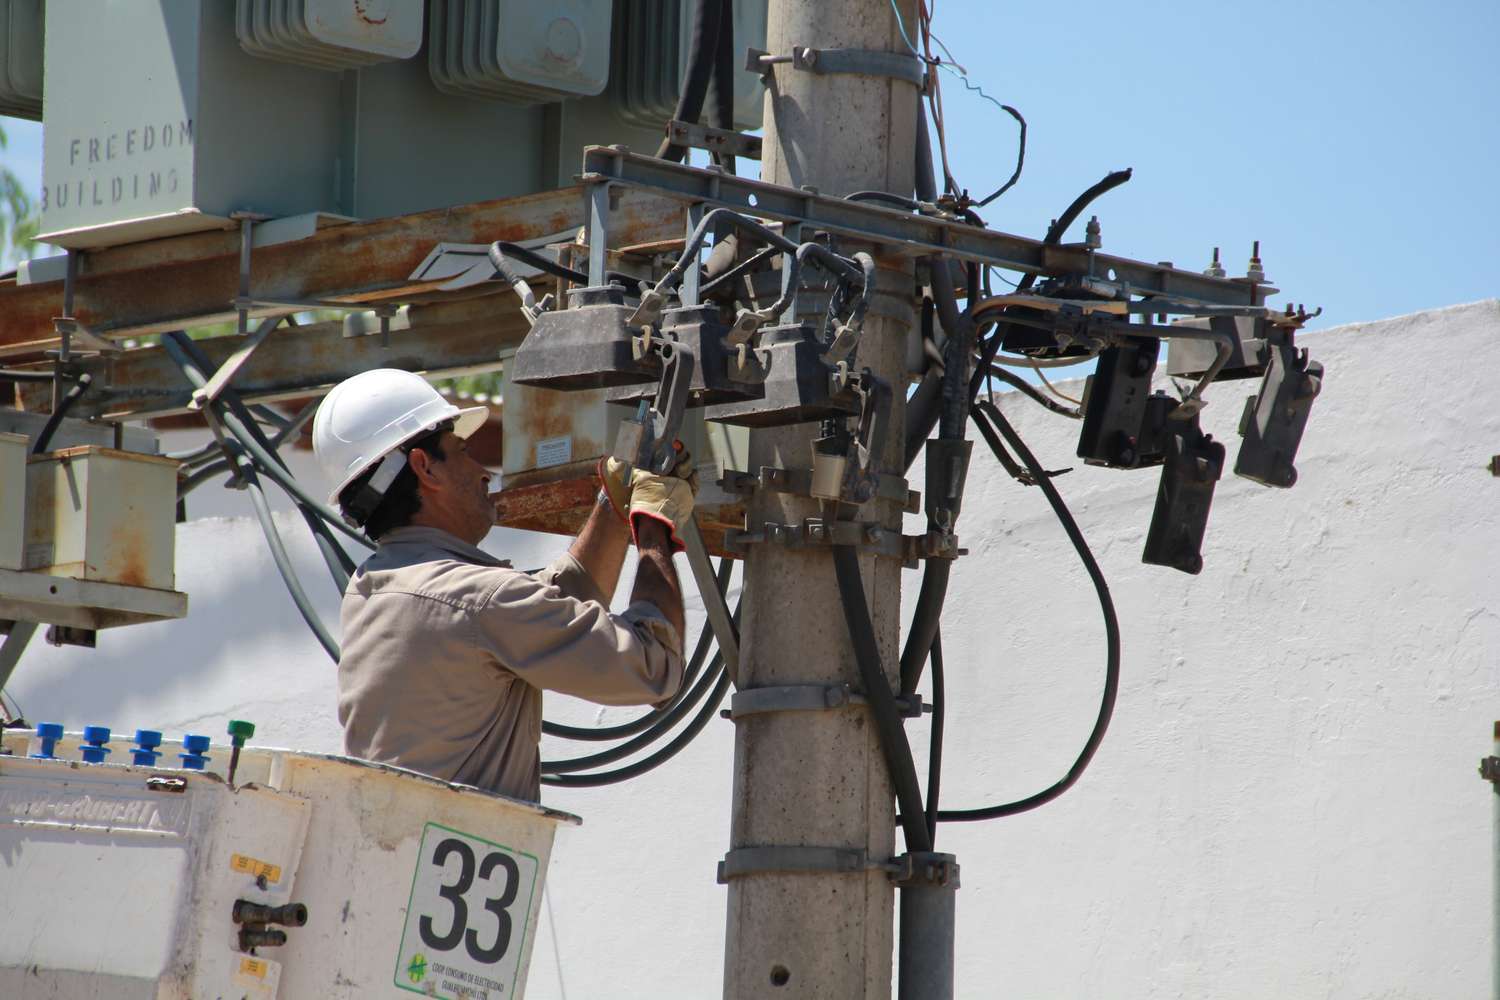 La conexión de nuevo equipamiento dejará sin electricidad a una importante zona por casi 6 horas